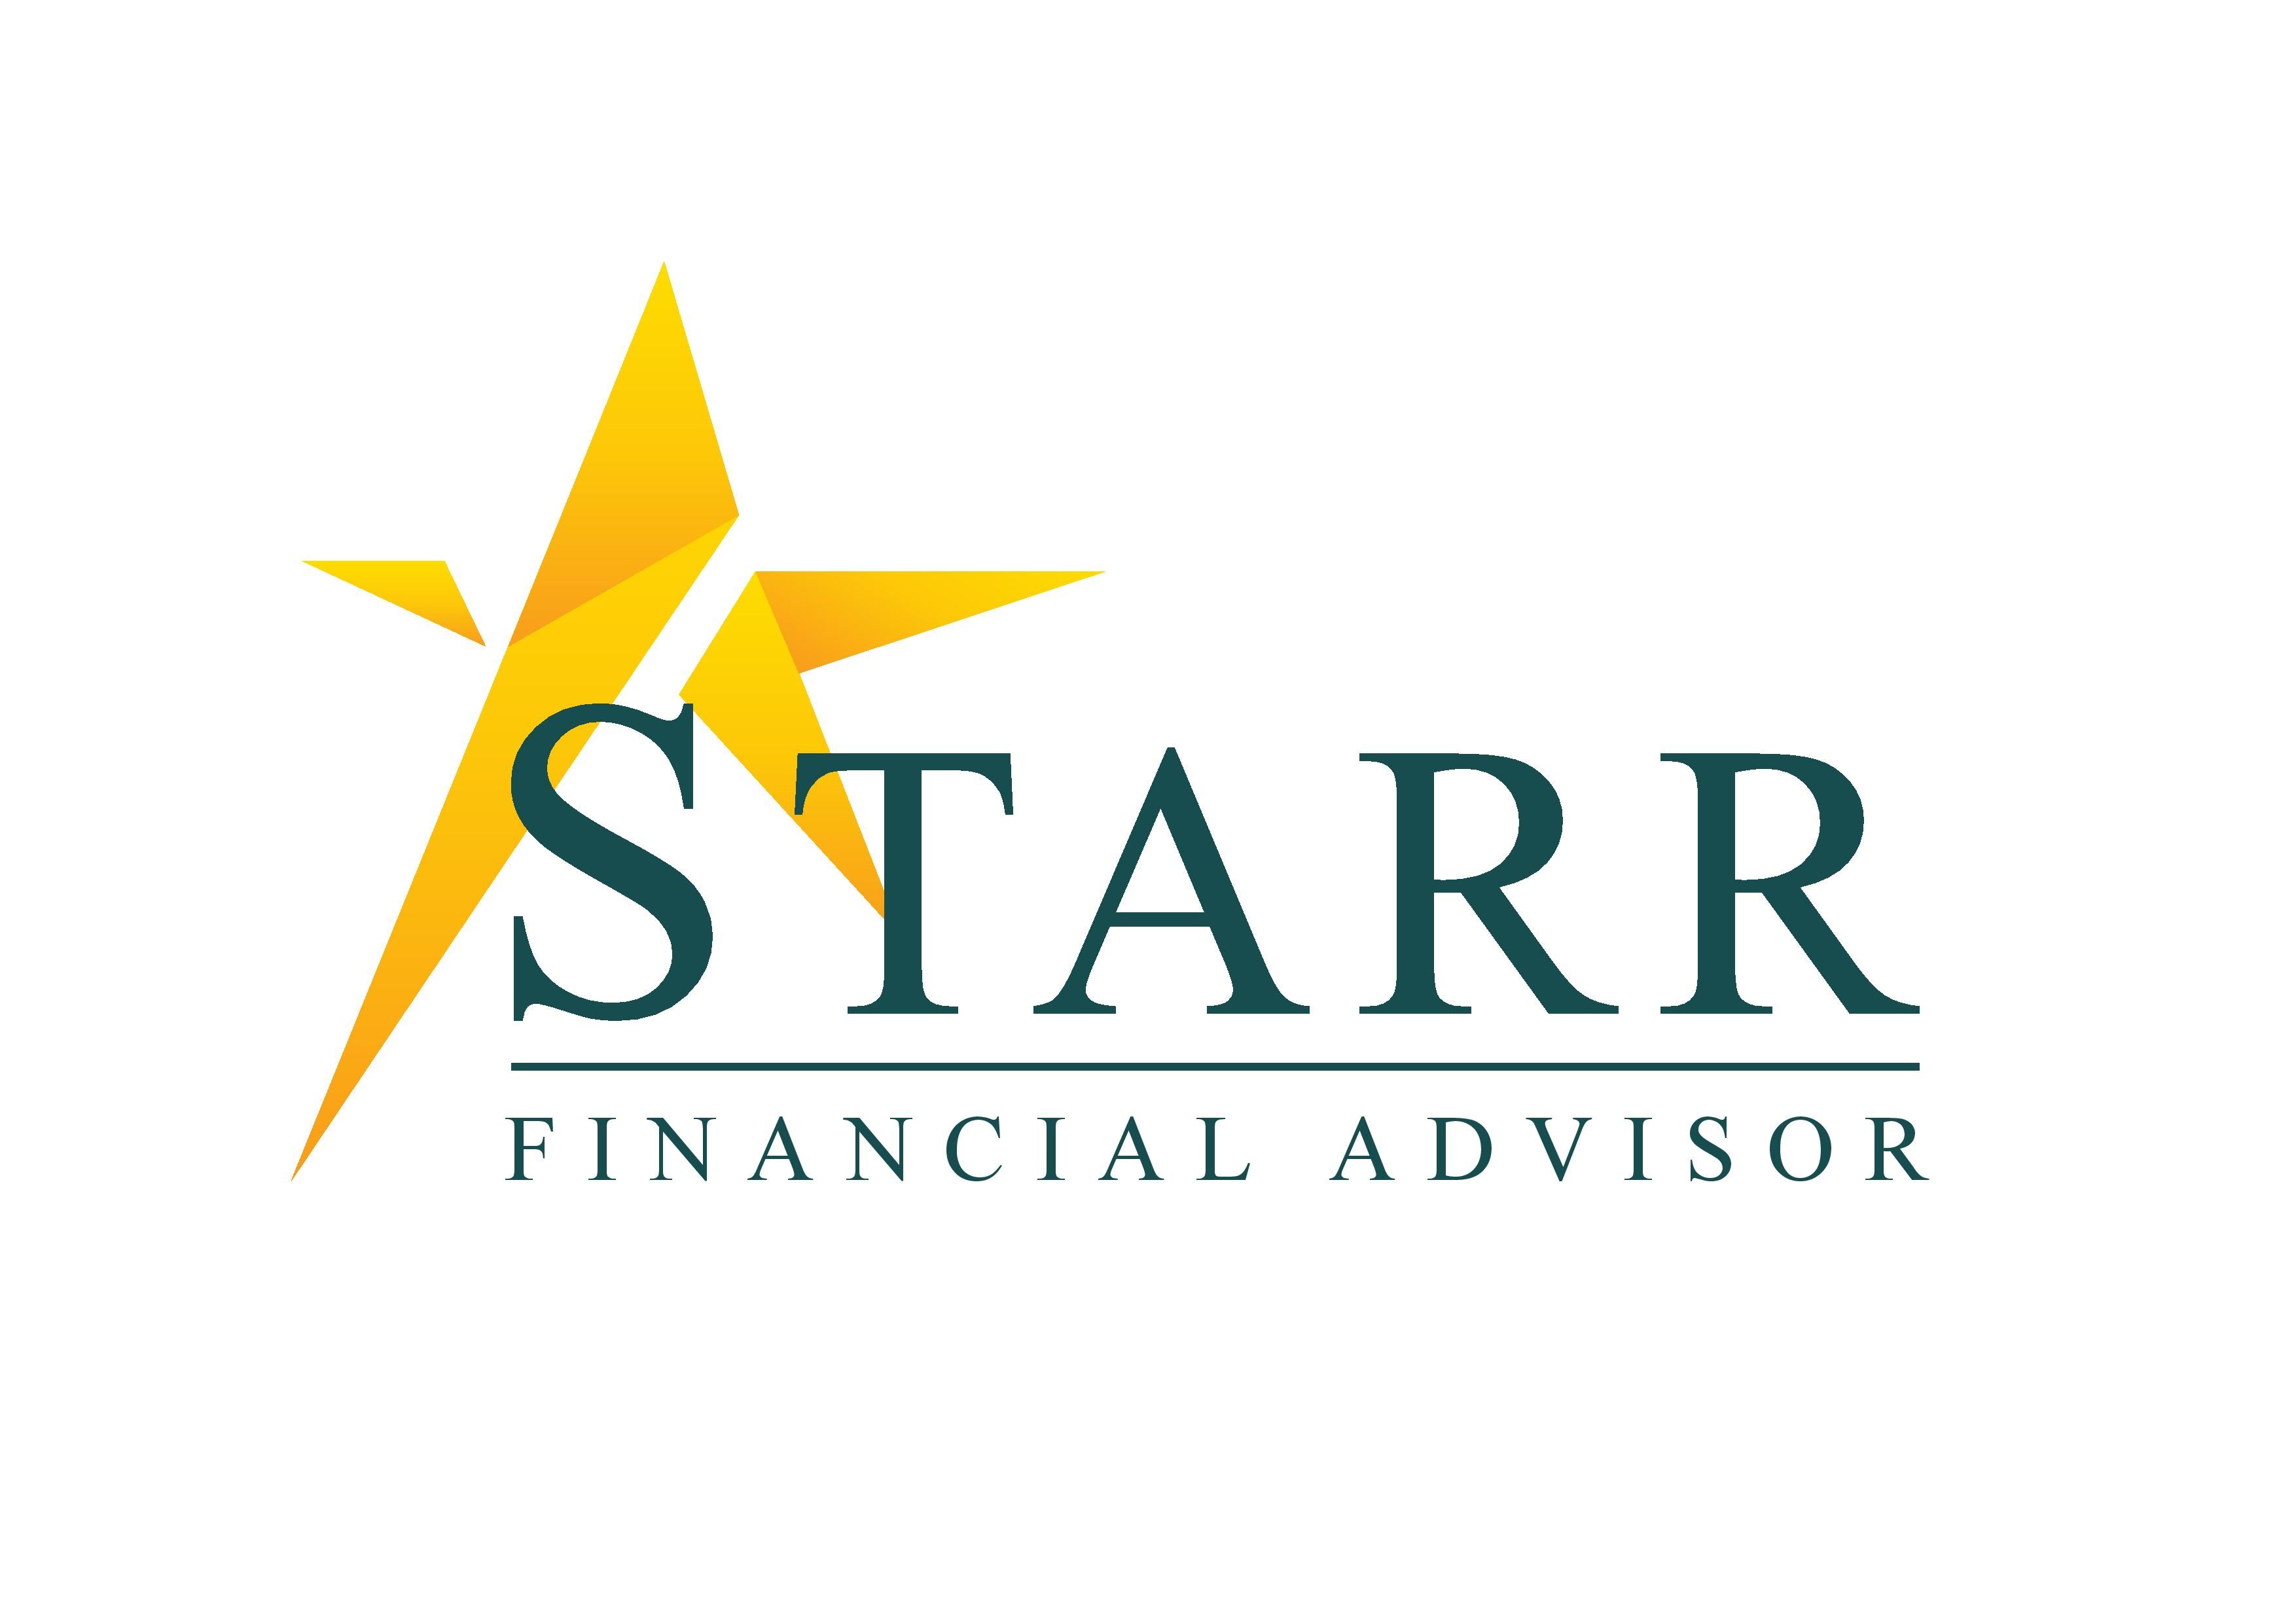 Starr Financial Advisor - Gordon Lee